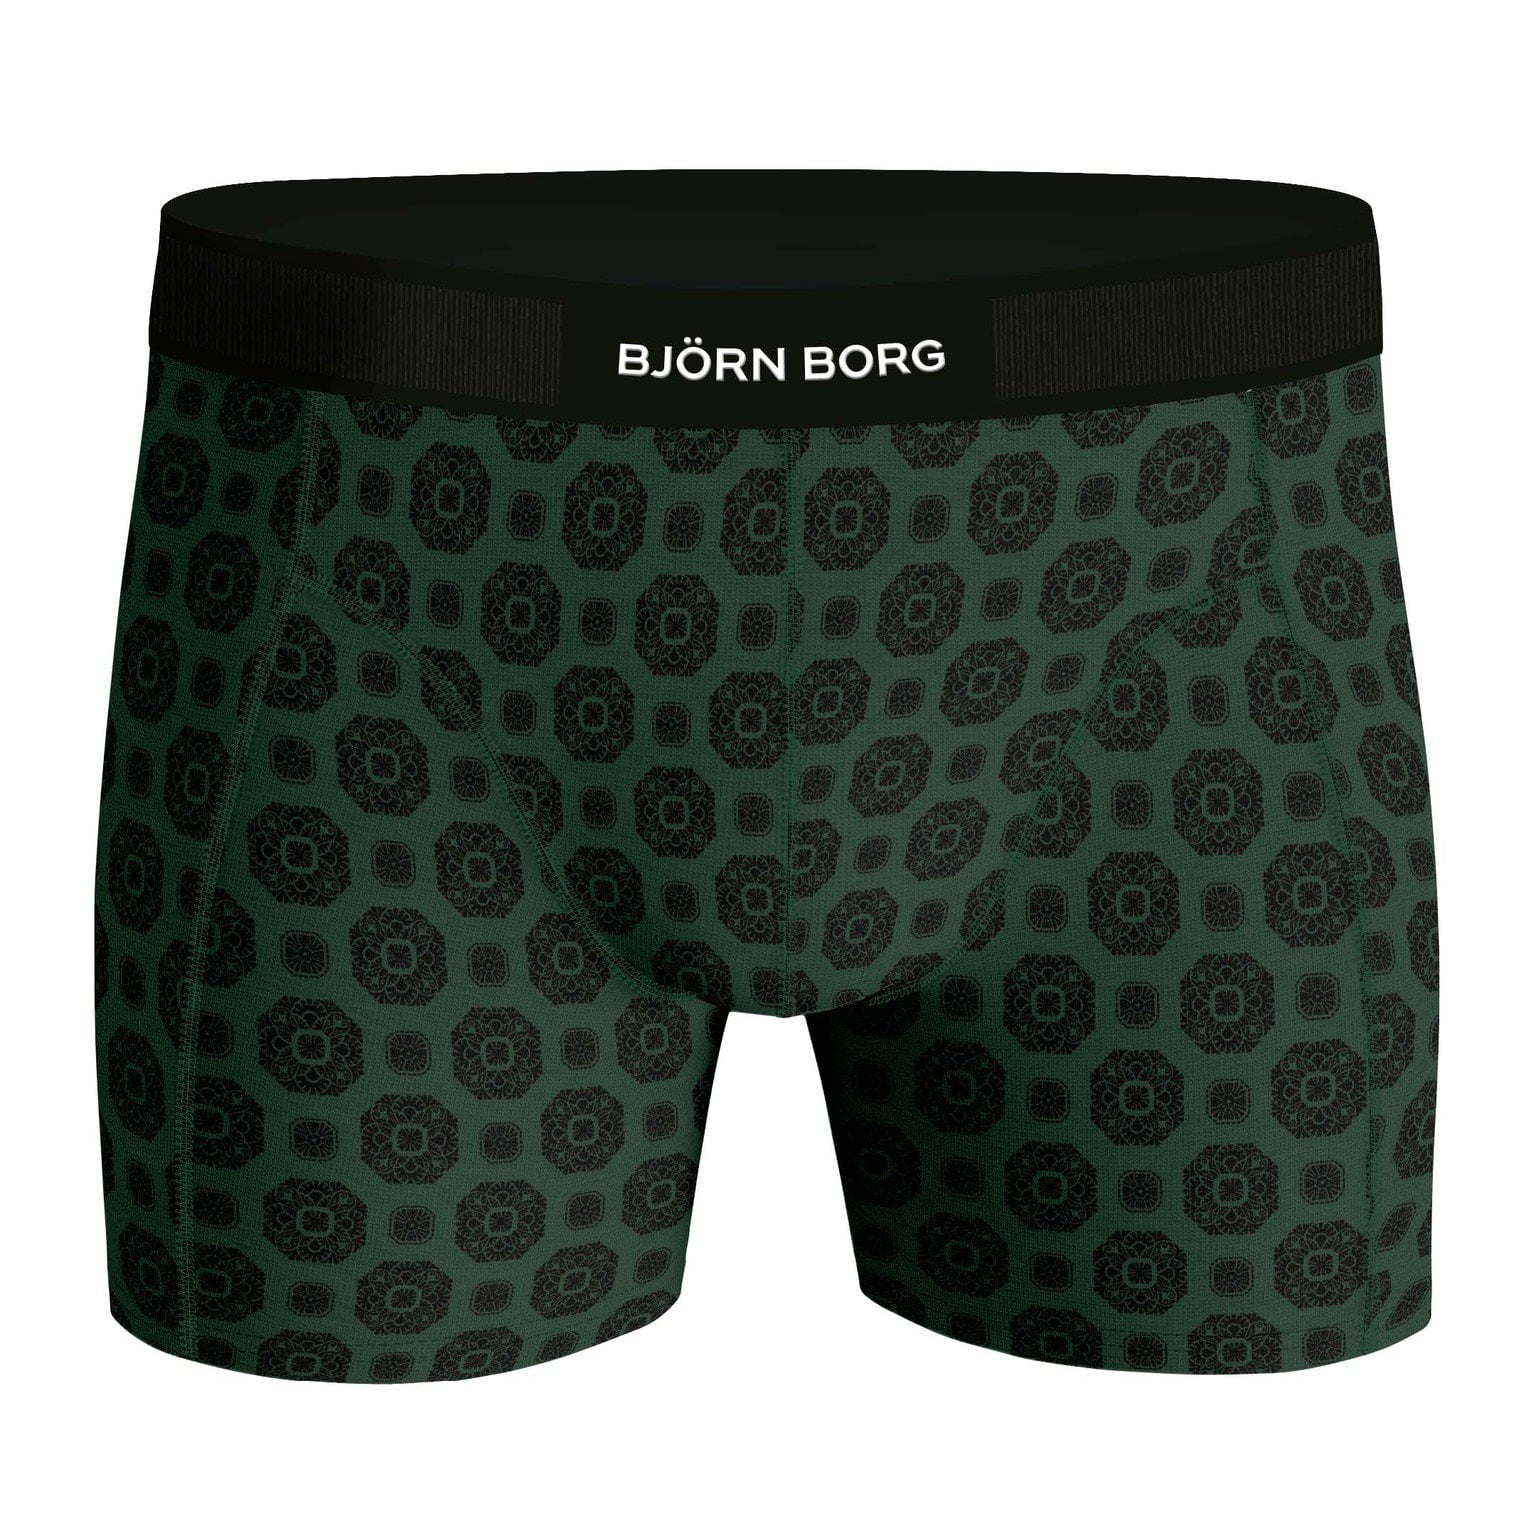 Bjorn Borg Premium Cotton Stretch 2-PACK Short 